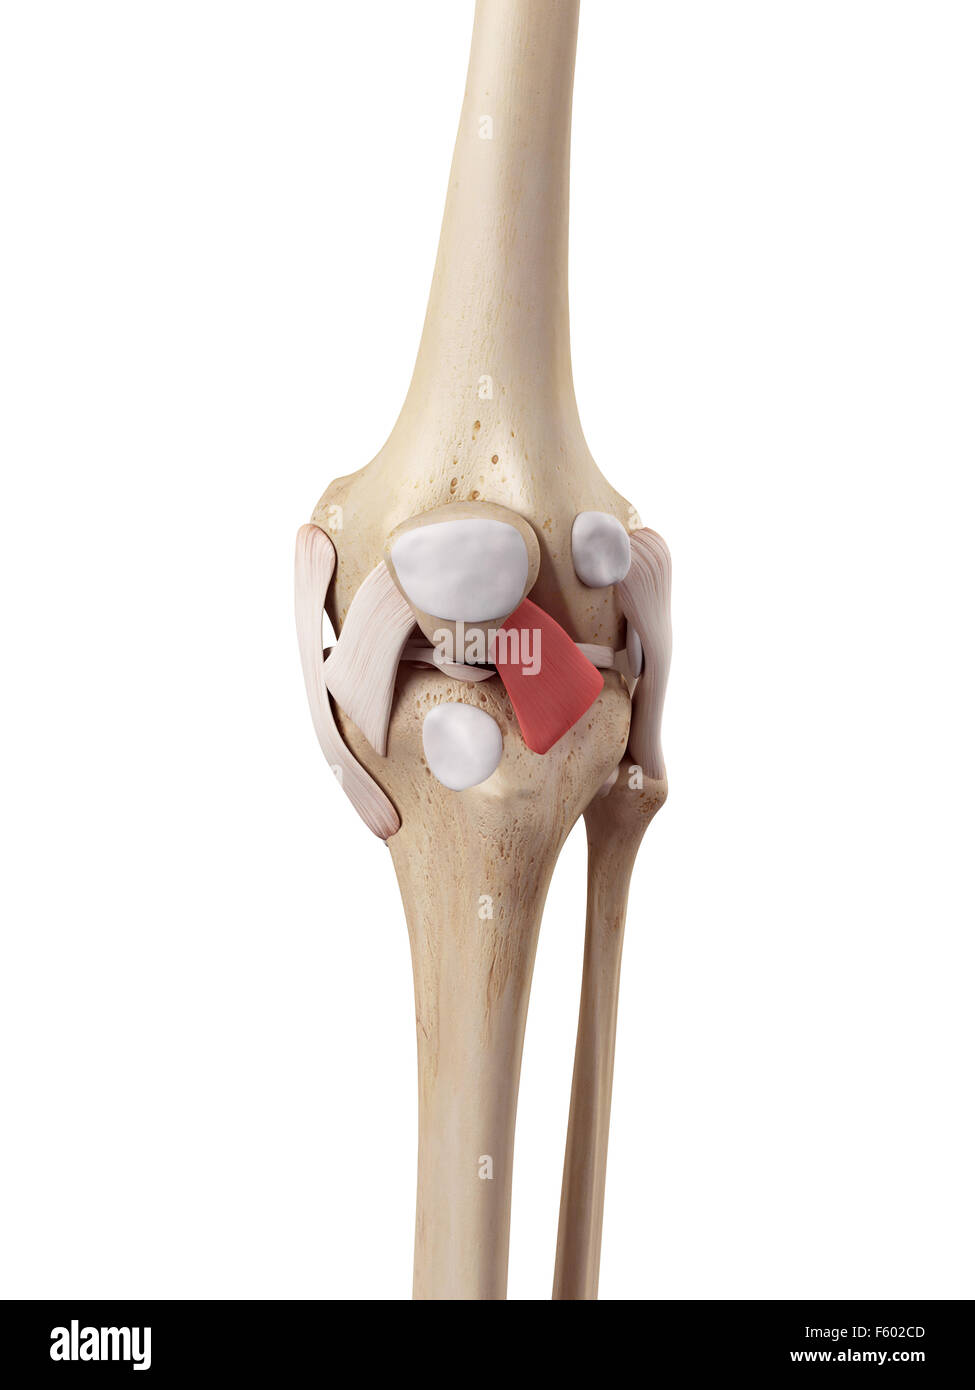 Medical precisa ilustración del ligamento patelar lateral Foto de stock